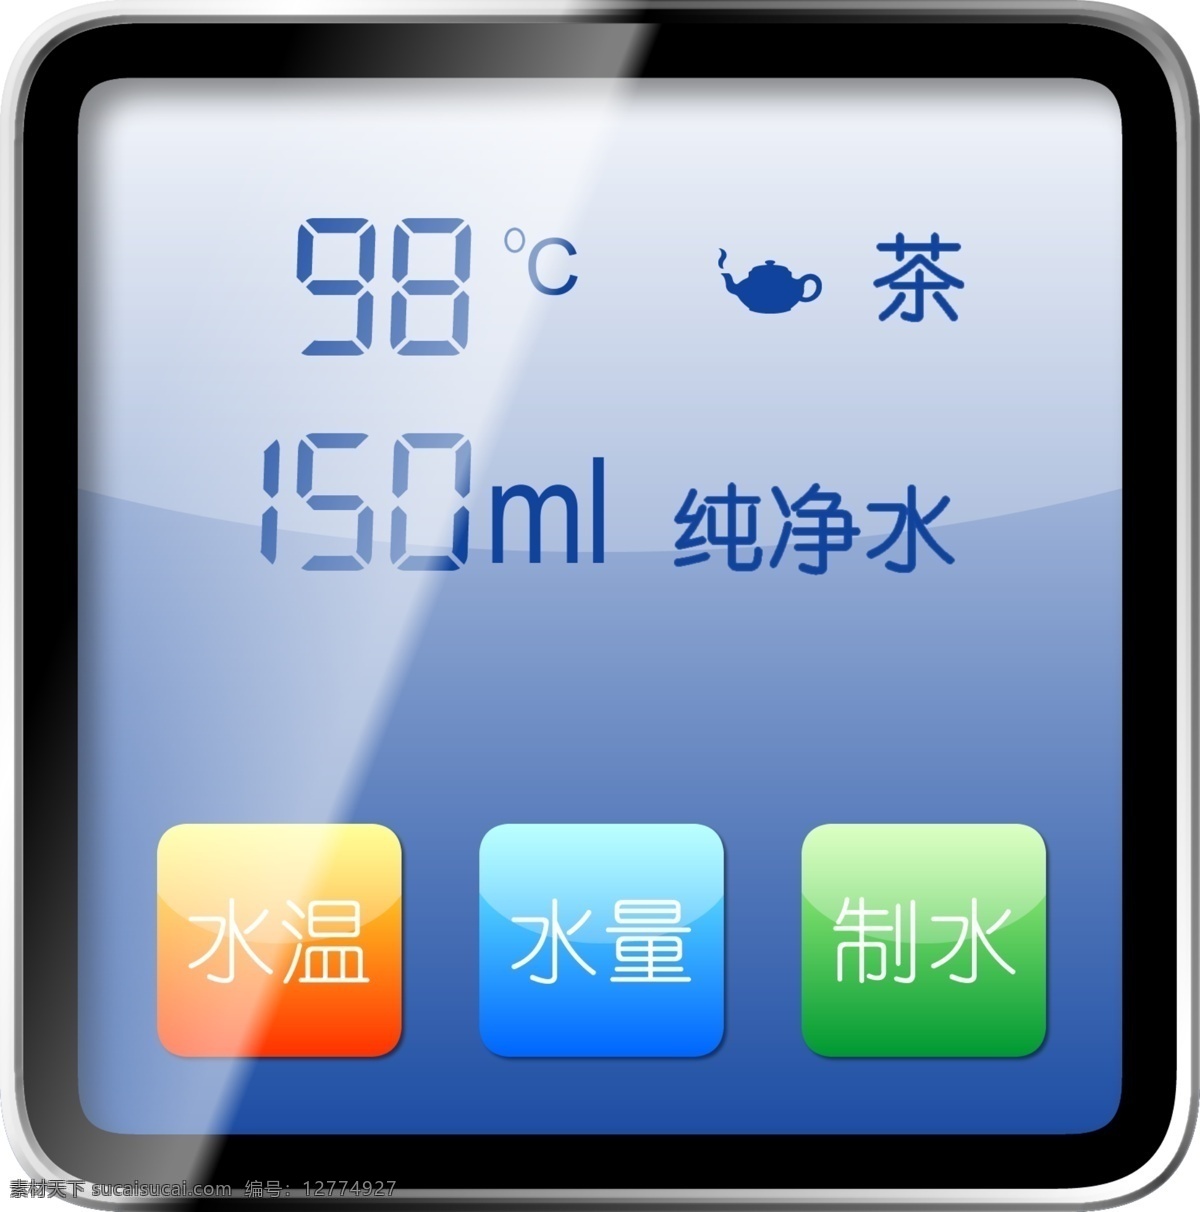 热水器 控制器 液晶屏 非触摸式屏幕 仿 iphone 屏幕 图标 分层 源文件